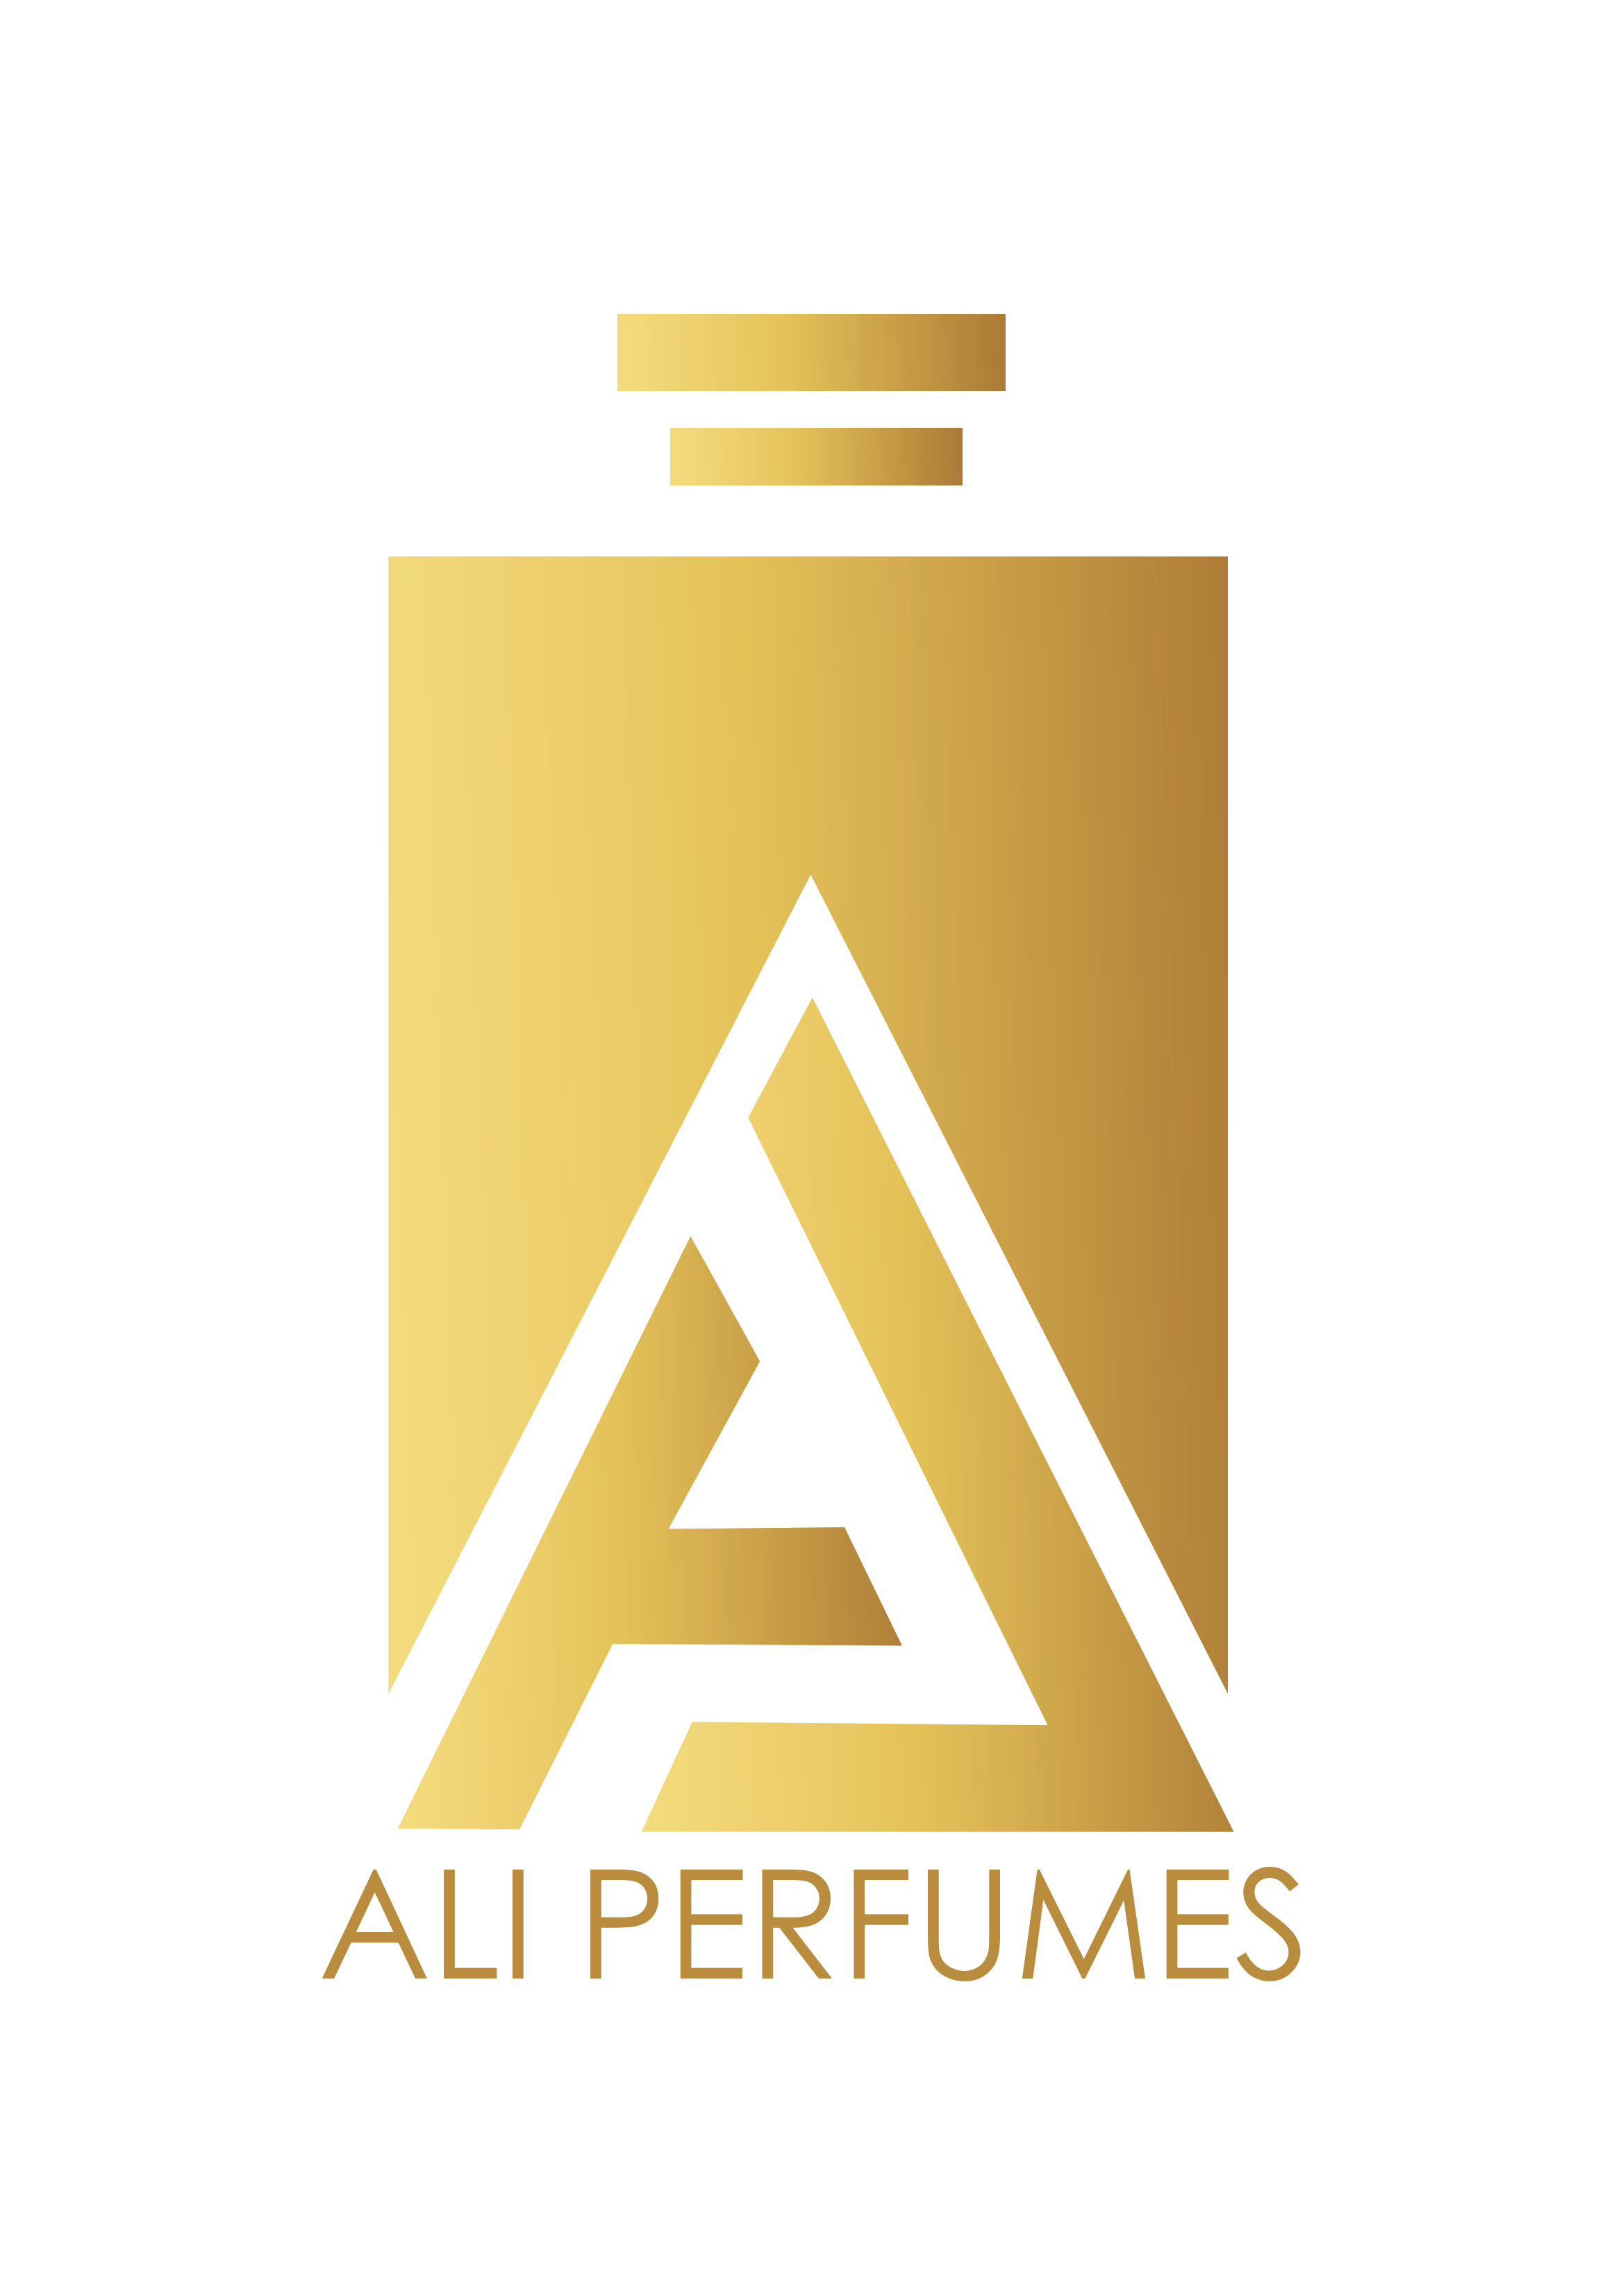 Ali Perfumes